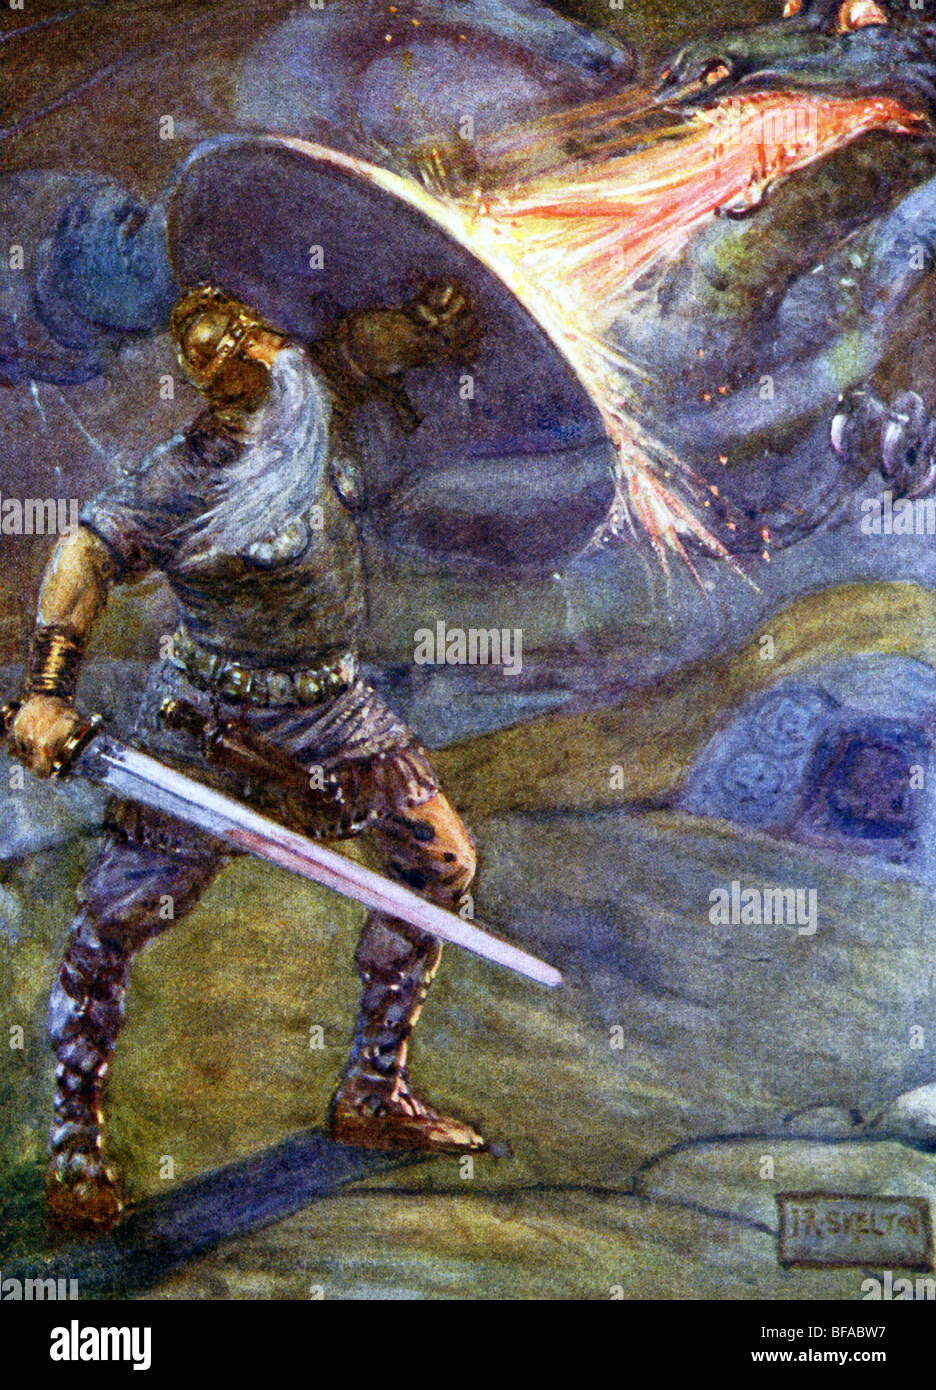 La leggenda di Beowulf.ha ricevuto la spada Naegling dopo aver sconfitto il mostro Grendel, ma non sopravvivere a questa lotta con il drago. Foto Stock